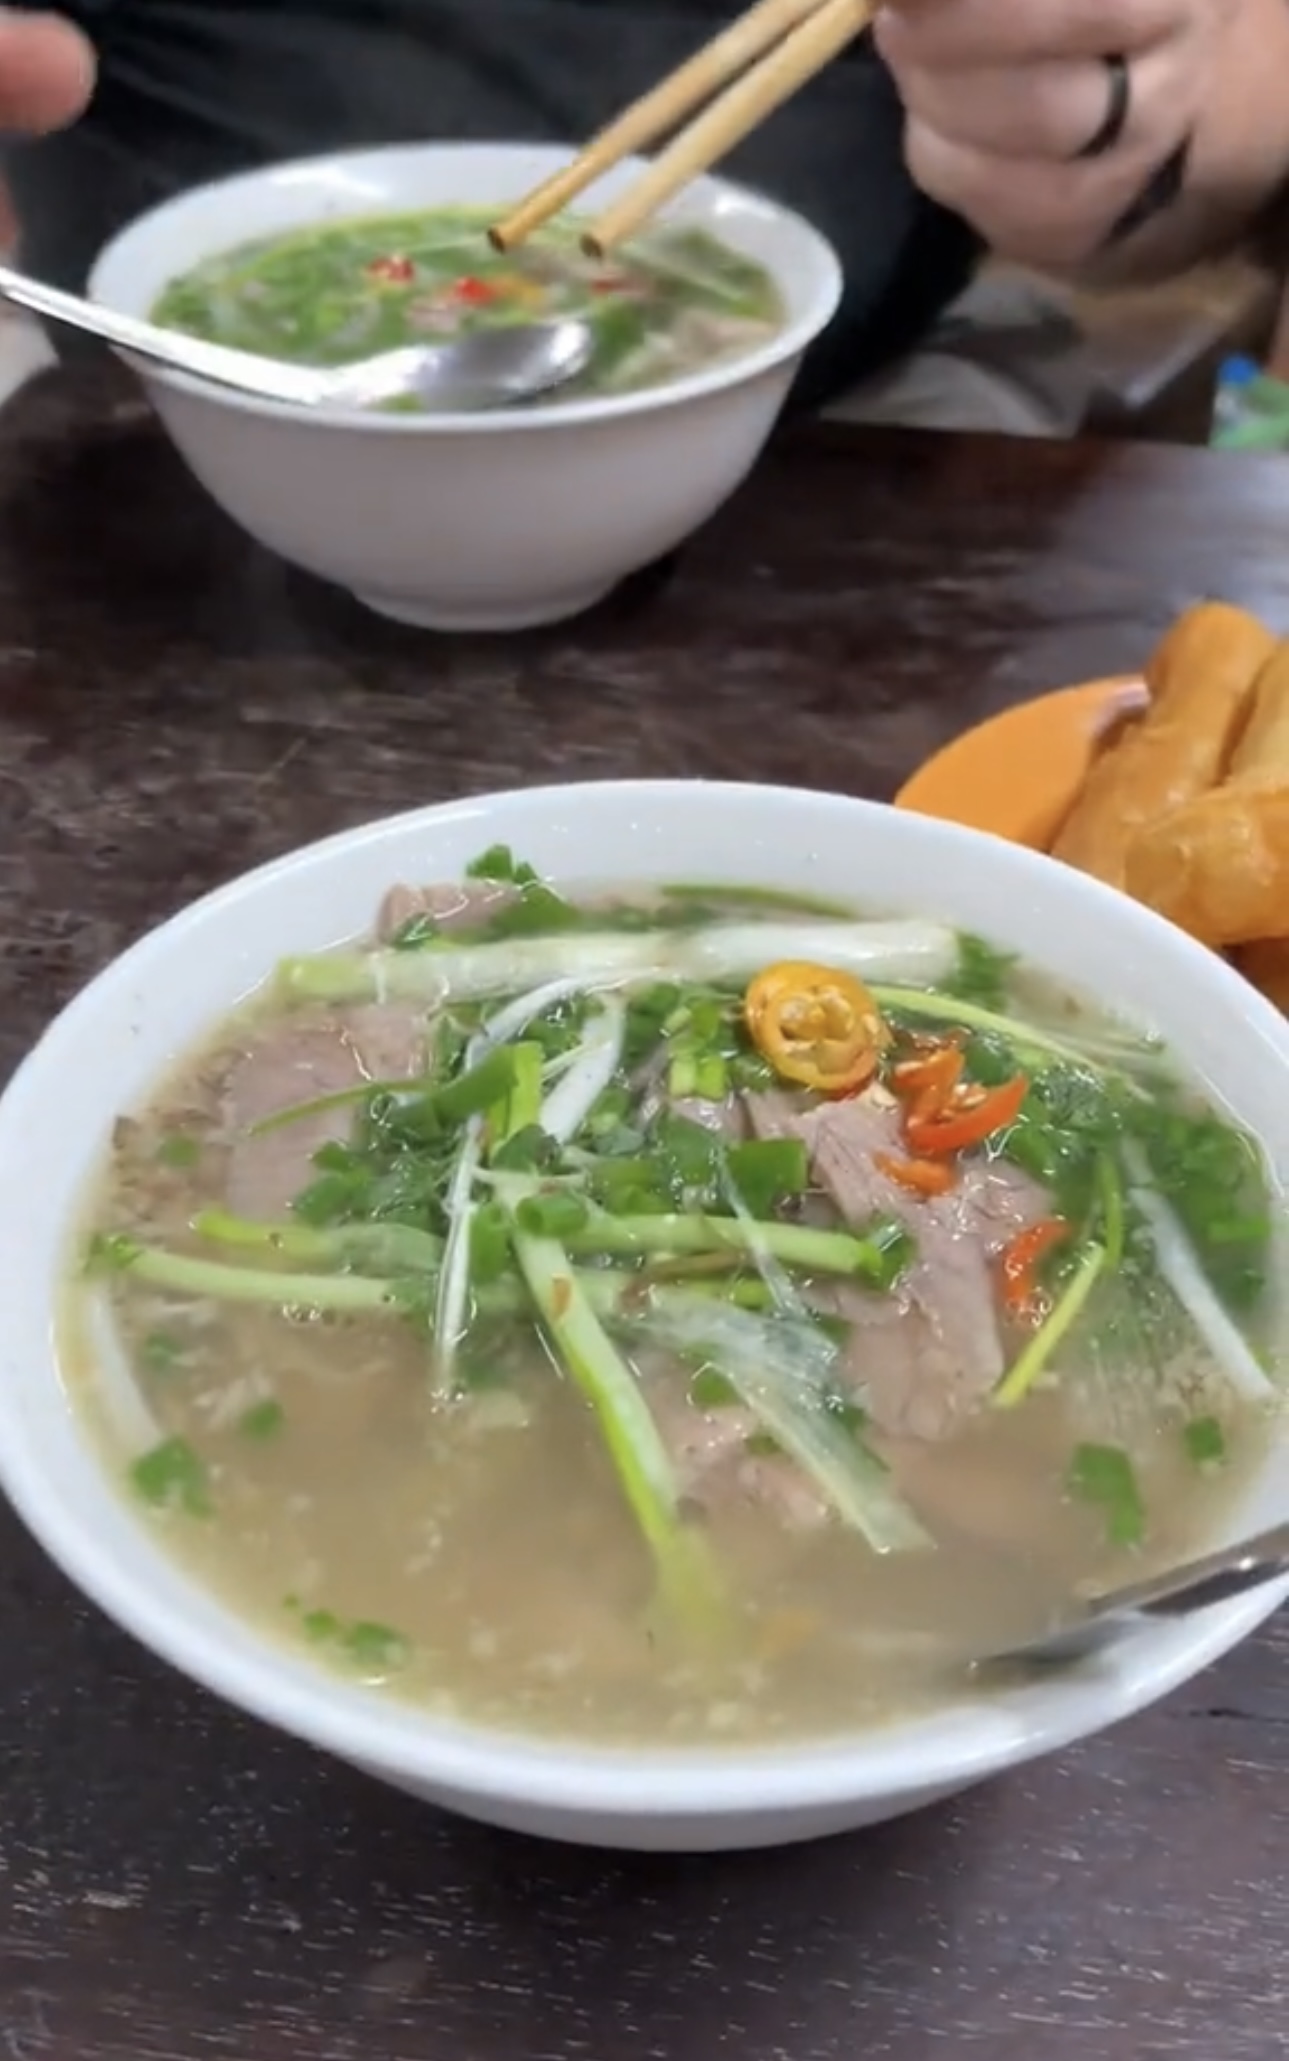 Đi nửa vòng trái đất đến Việt Nam để thực hiện ước mơ ăn phở, nhưng món ăn kèm này mới là điều khiến du khách nước ngoài bất ngờ - ảnh 1